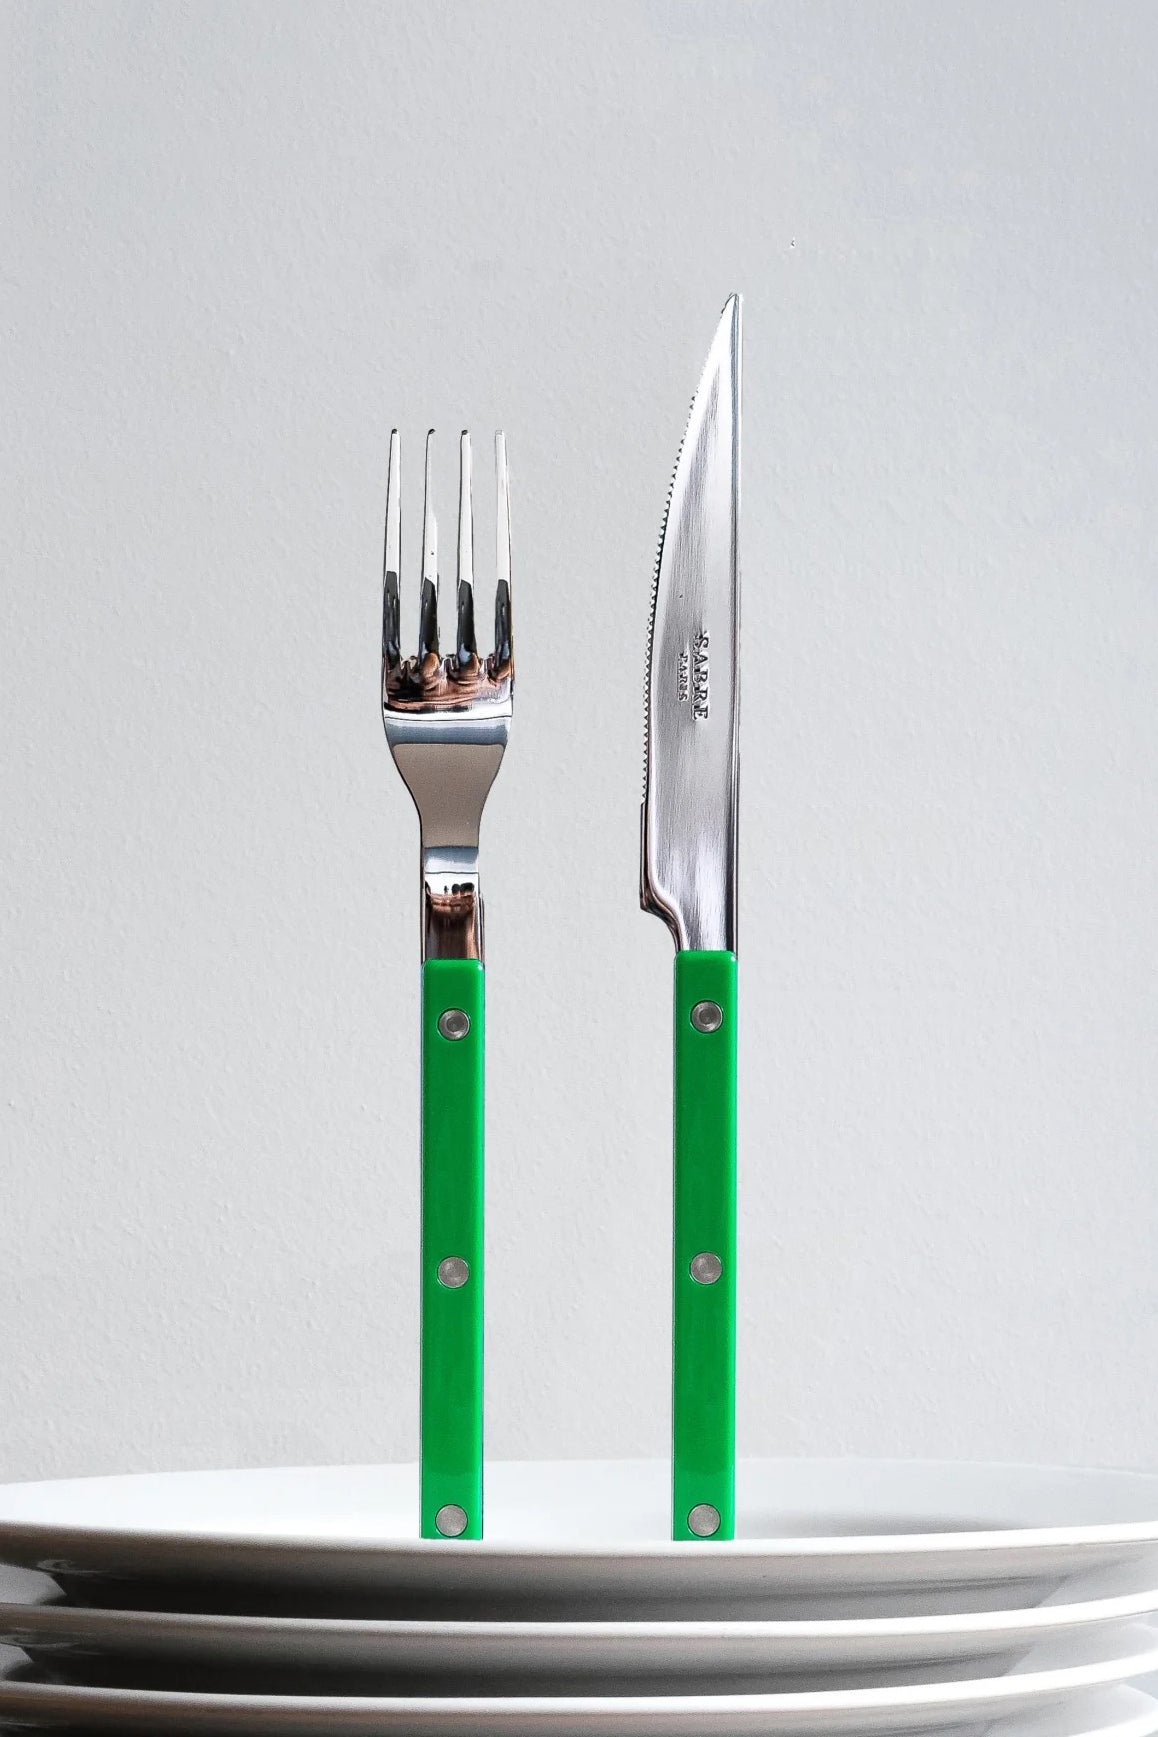 Bistrot cutlery garden green